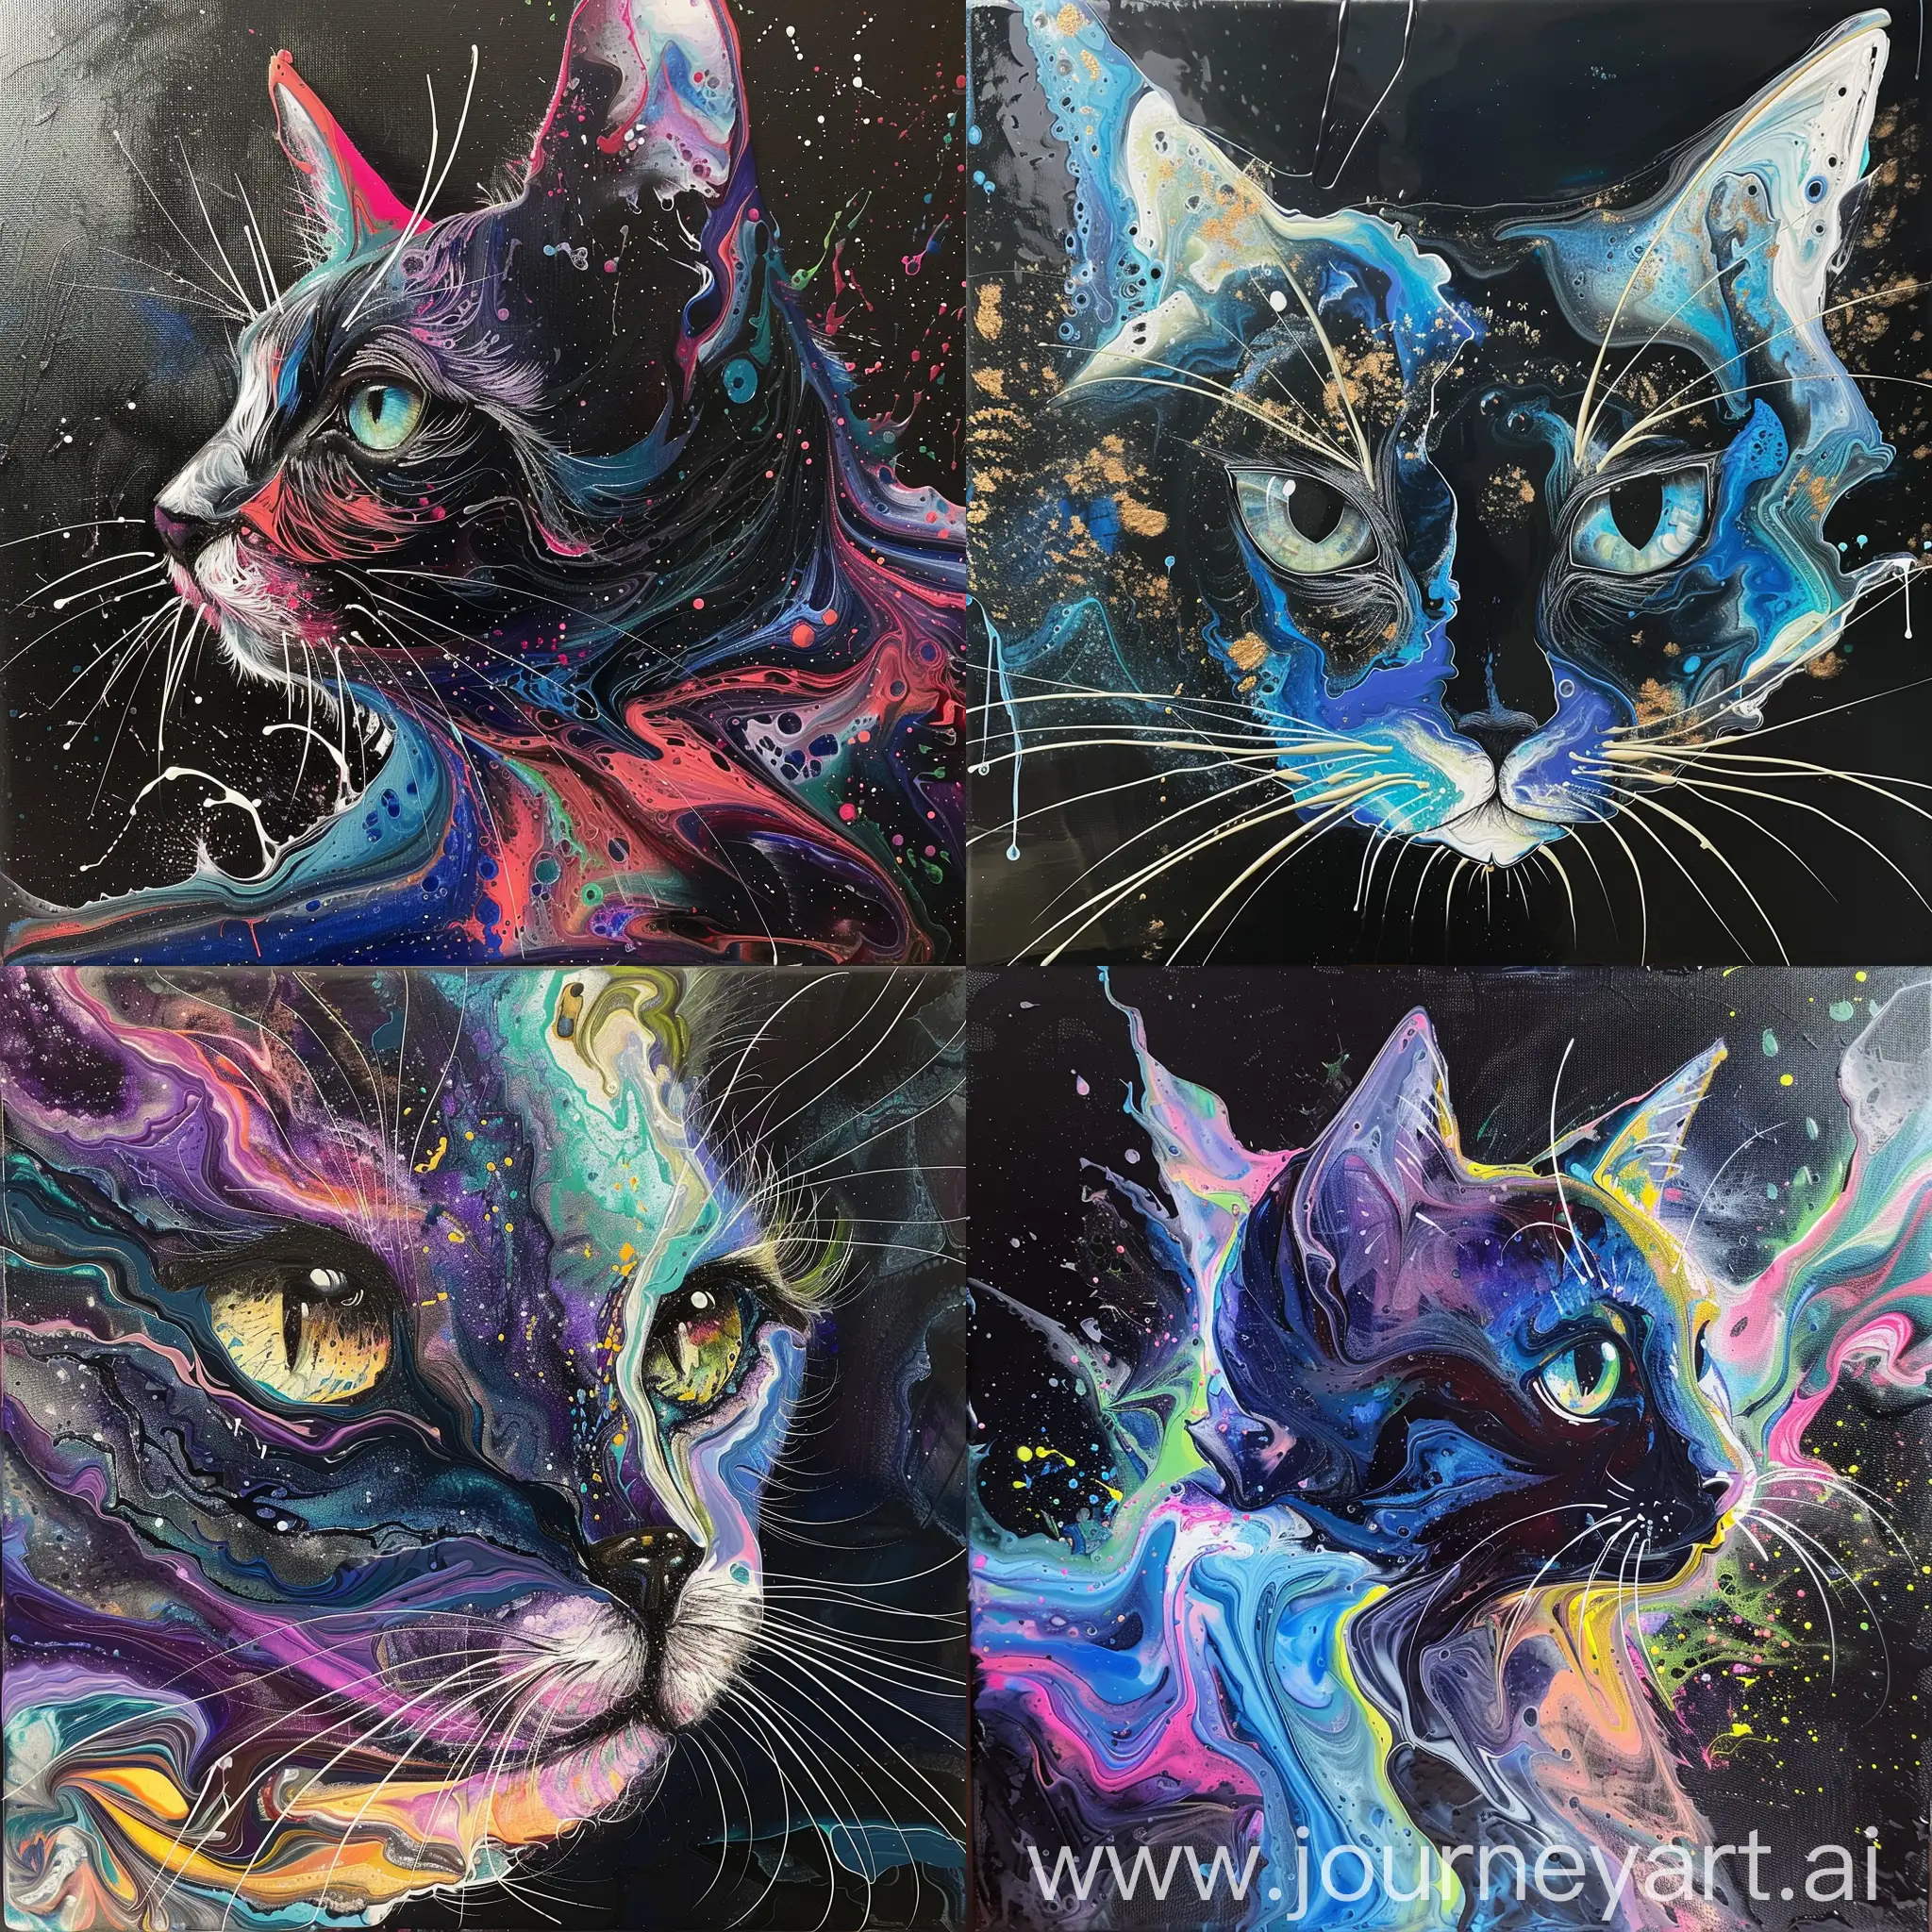 Vibrant-Acrylic-Pour-Style-Cat-Artwork